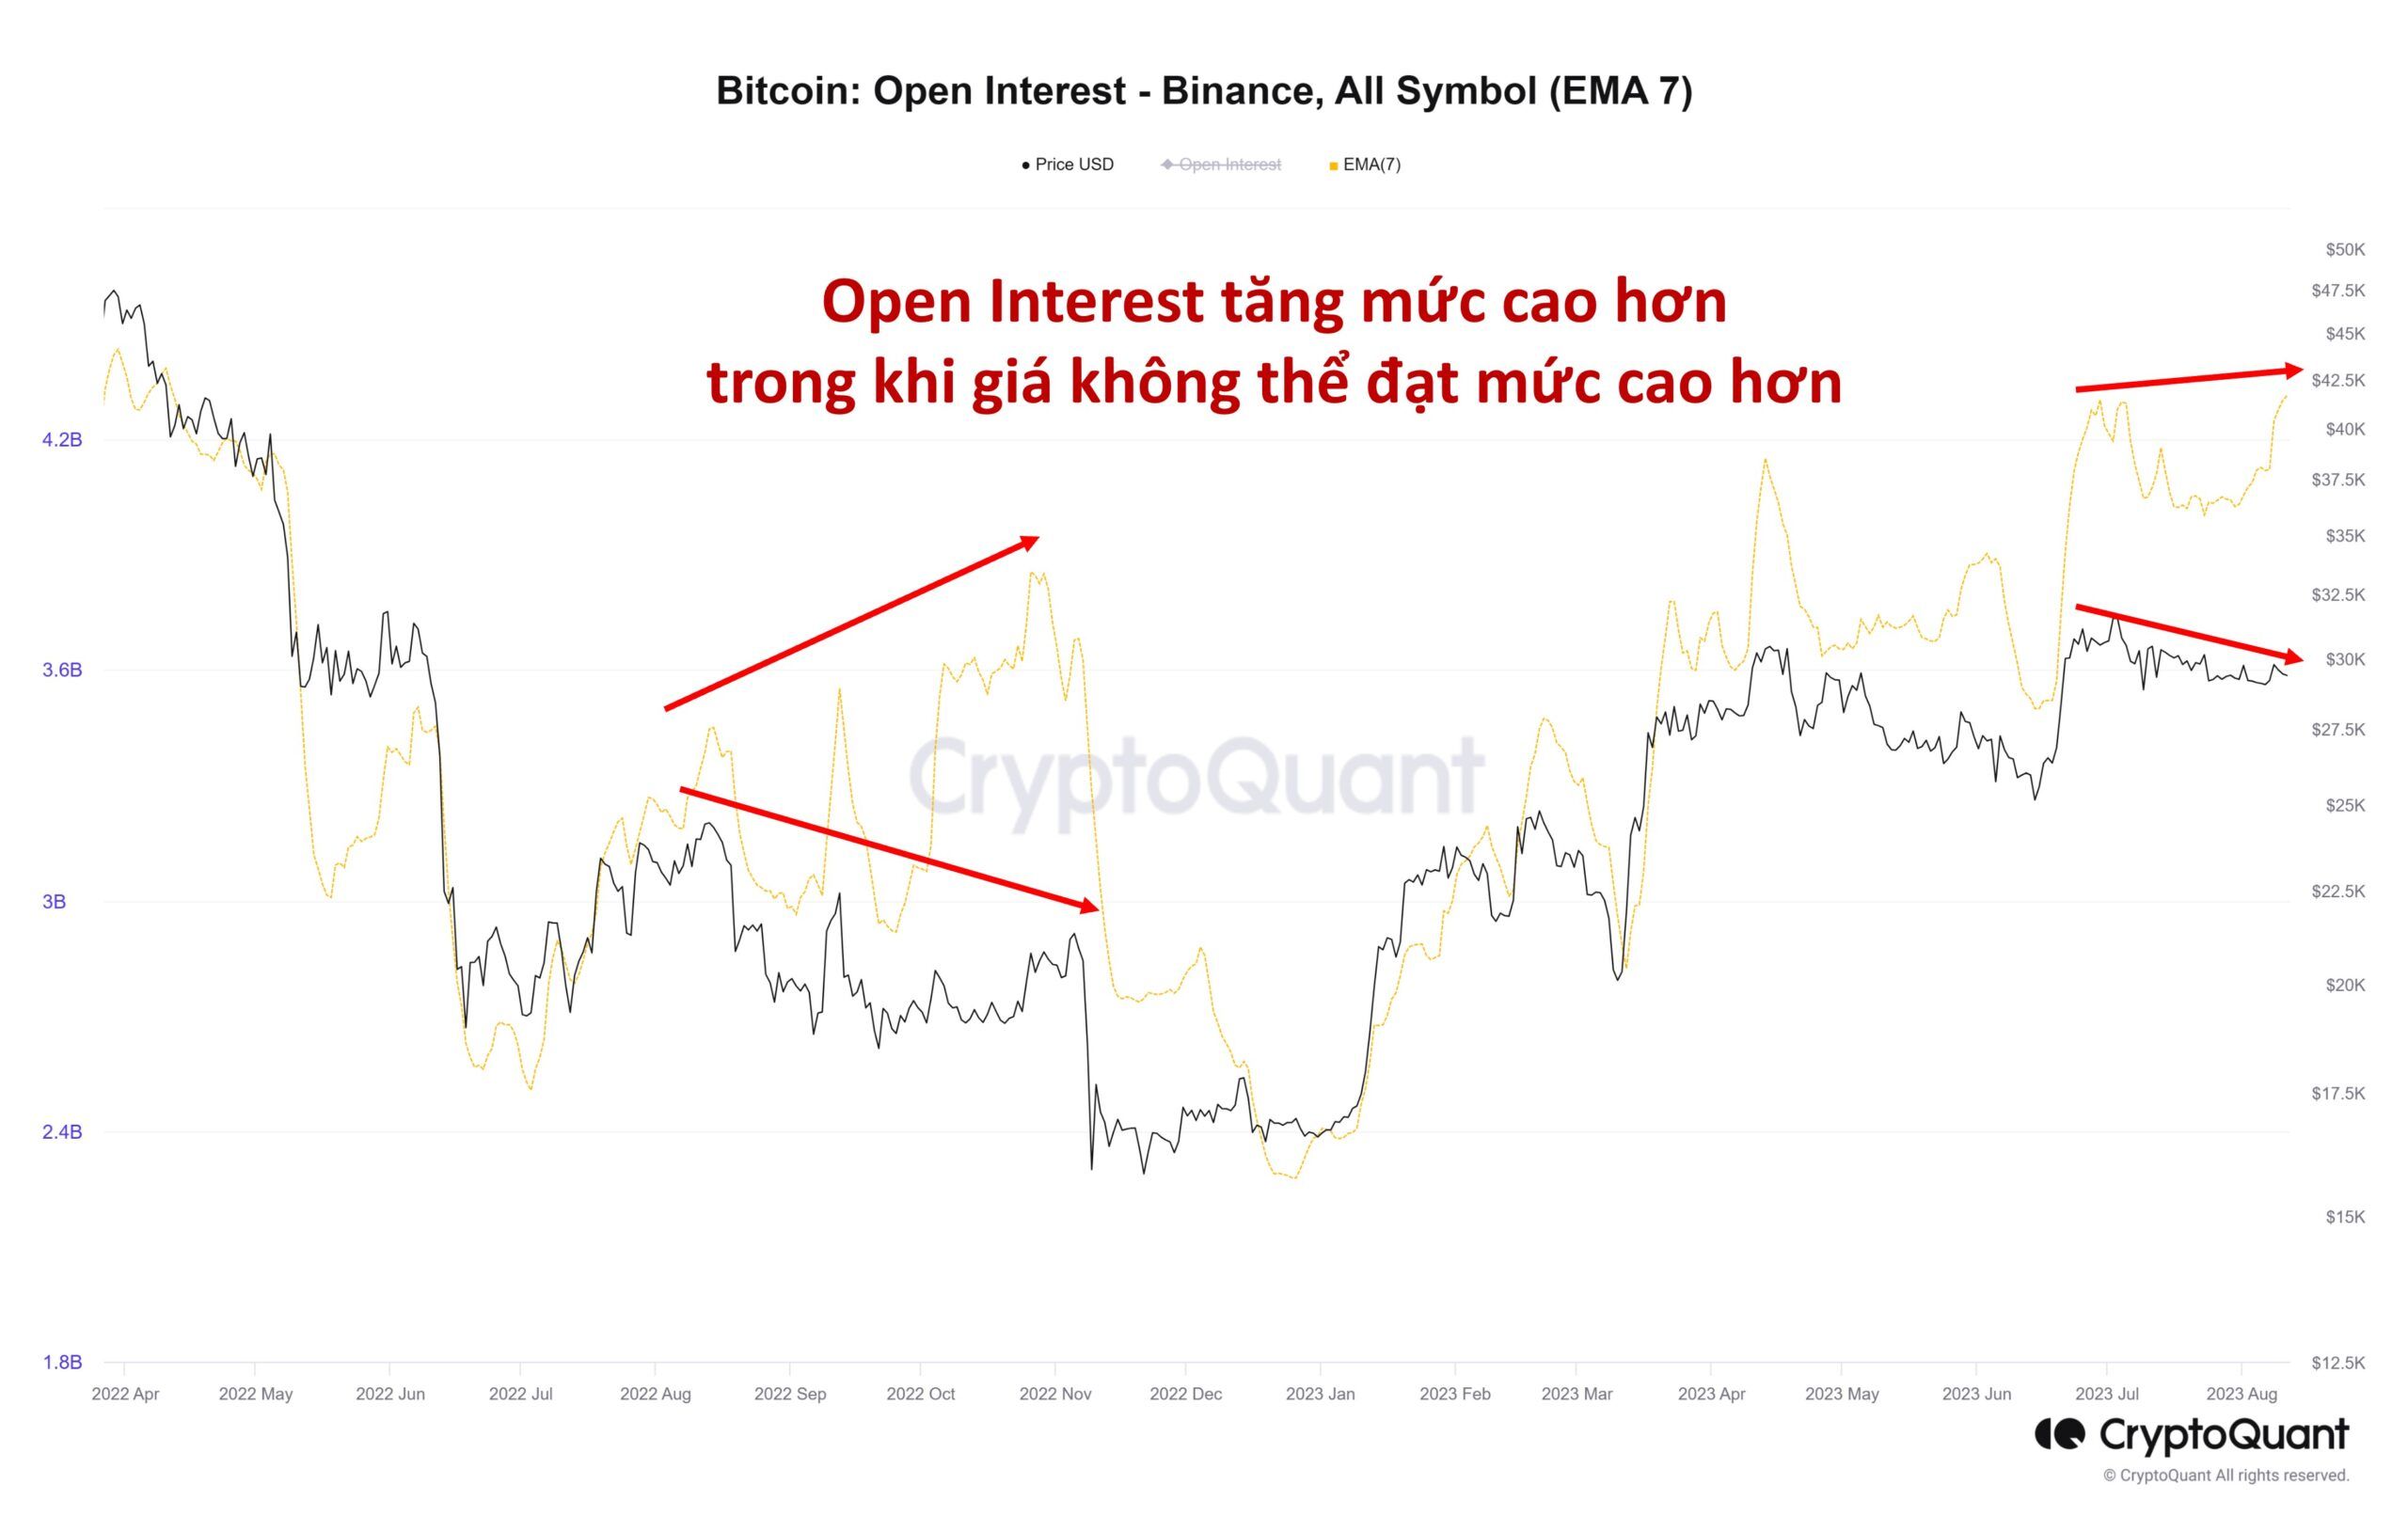 Lượng Open Interest của Bitcoin trên sàn Binance. Nguồn: CryptoQuant.